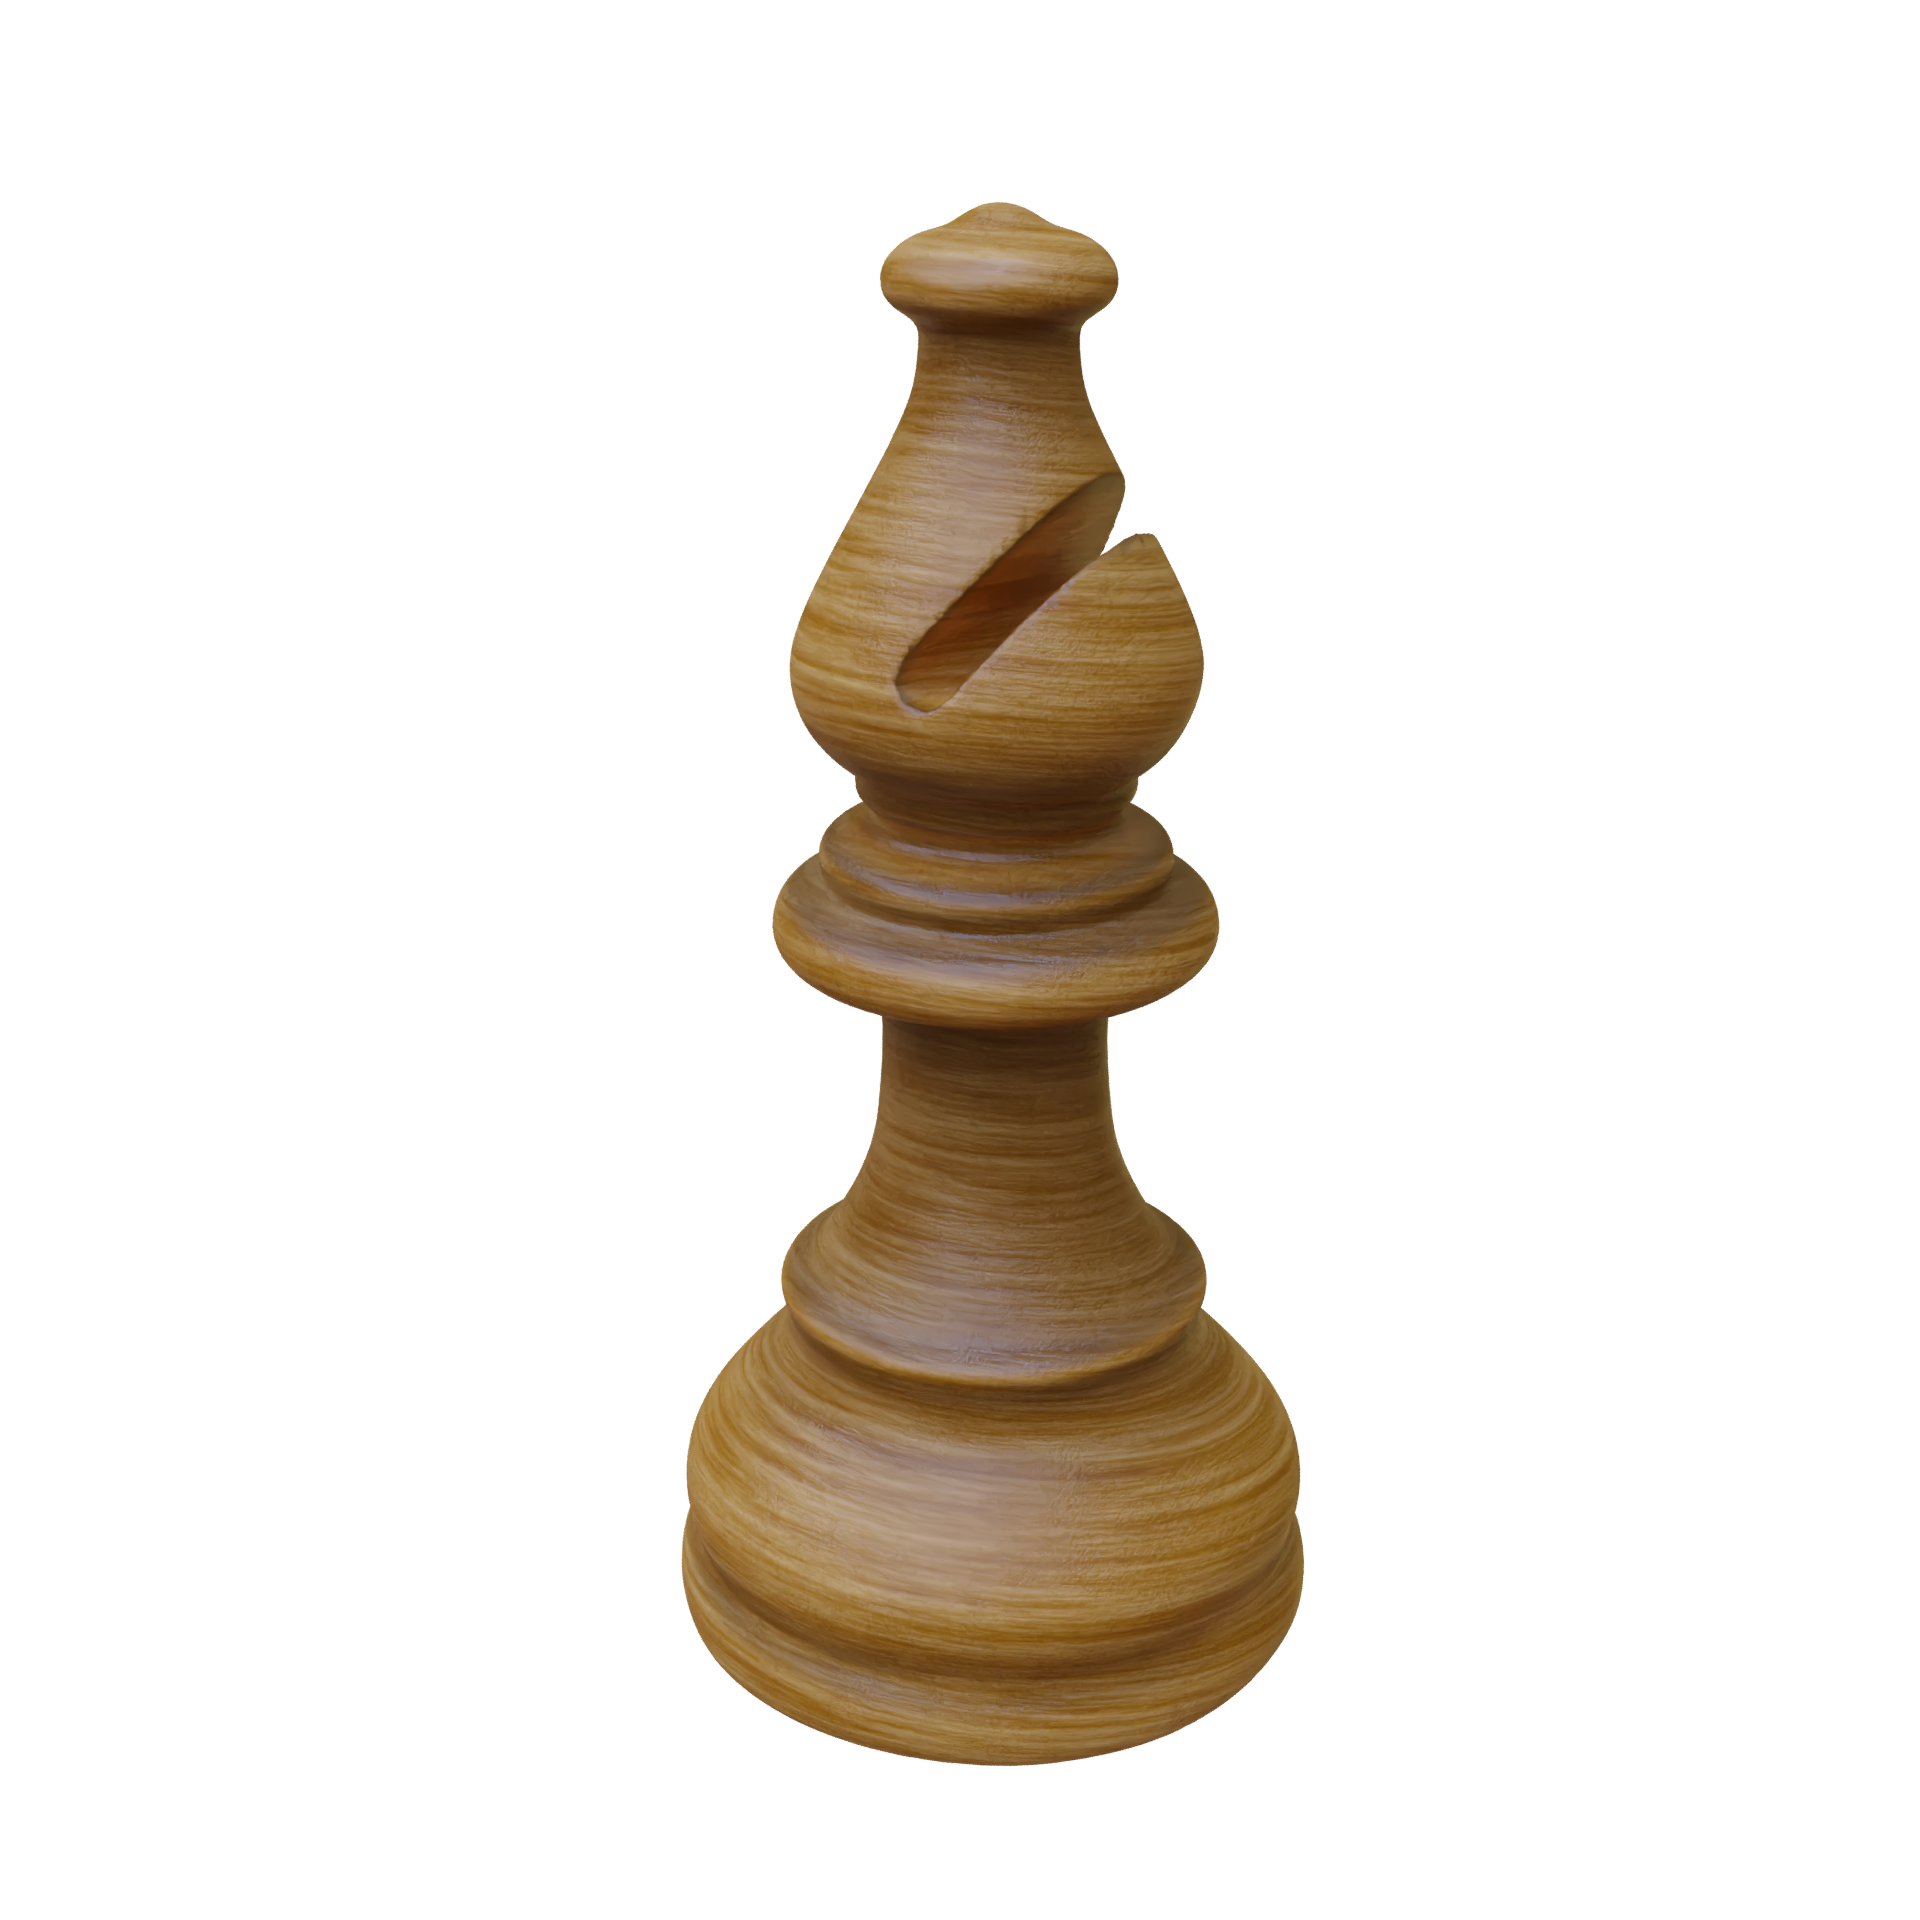 Bishop Chess Piece